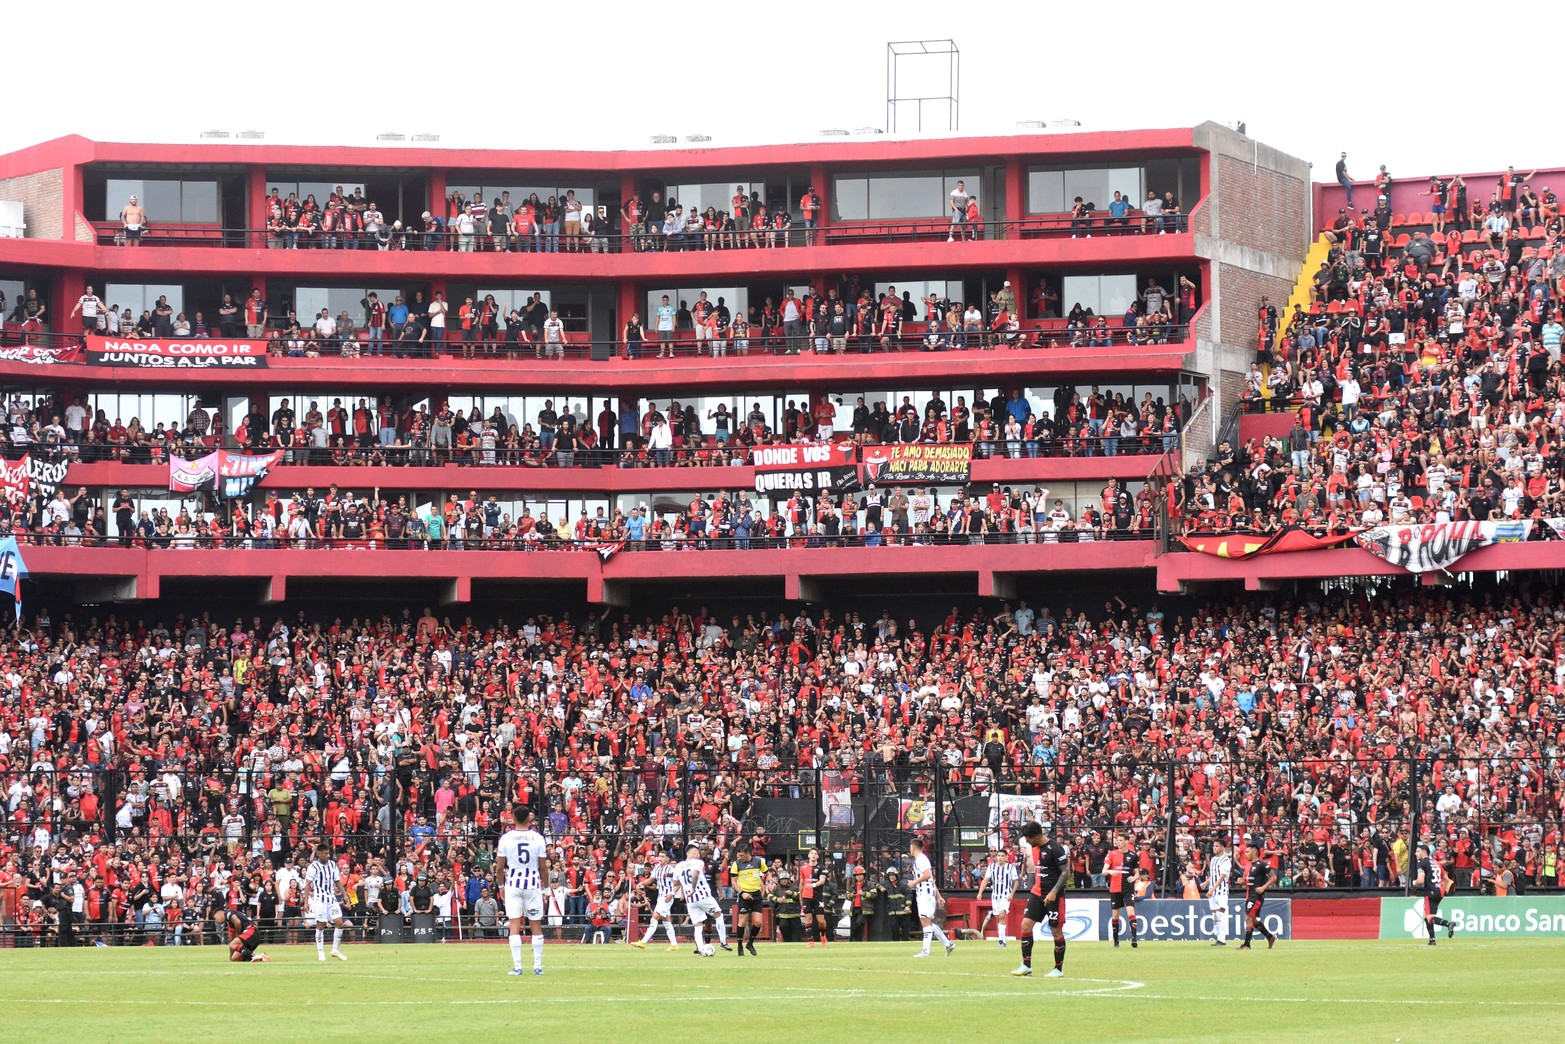 Zona de palcos y codo noroeste. El estadio de Colón volvió a estar repleto. Se estima mas de 40.000 personas.